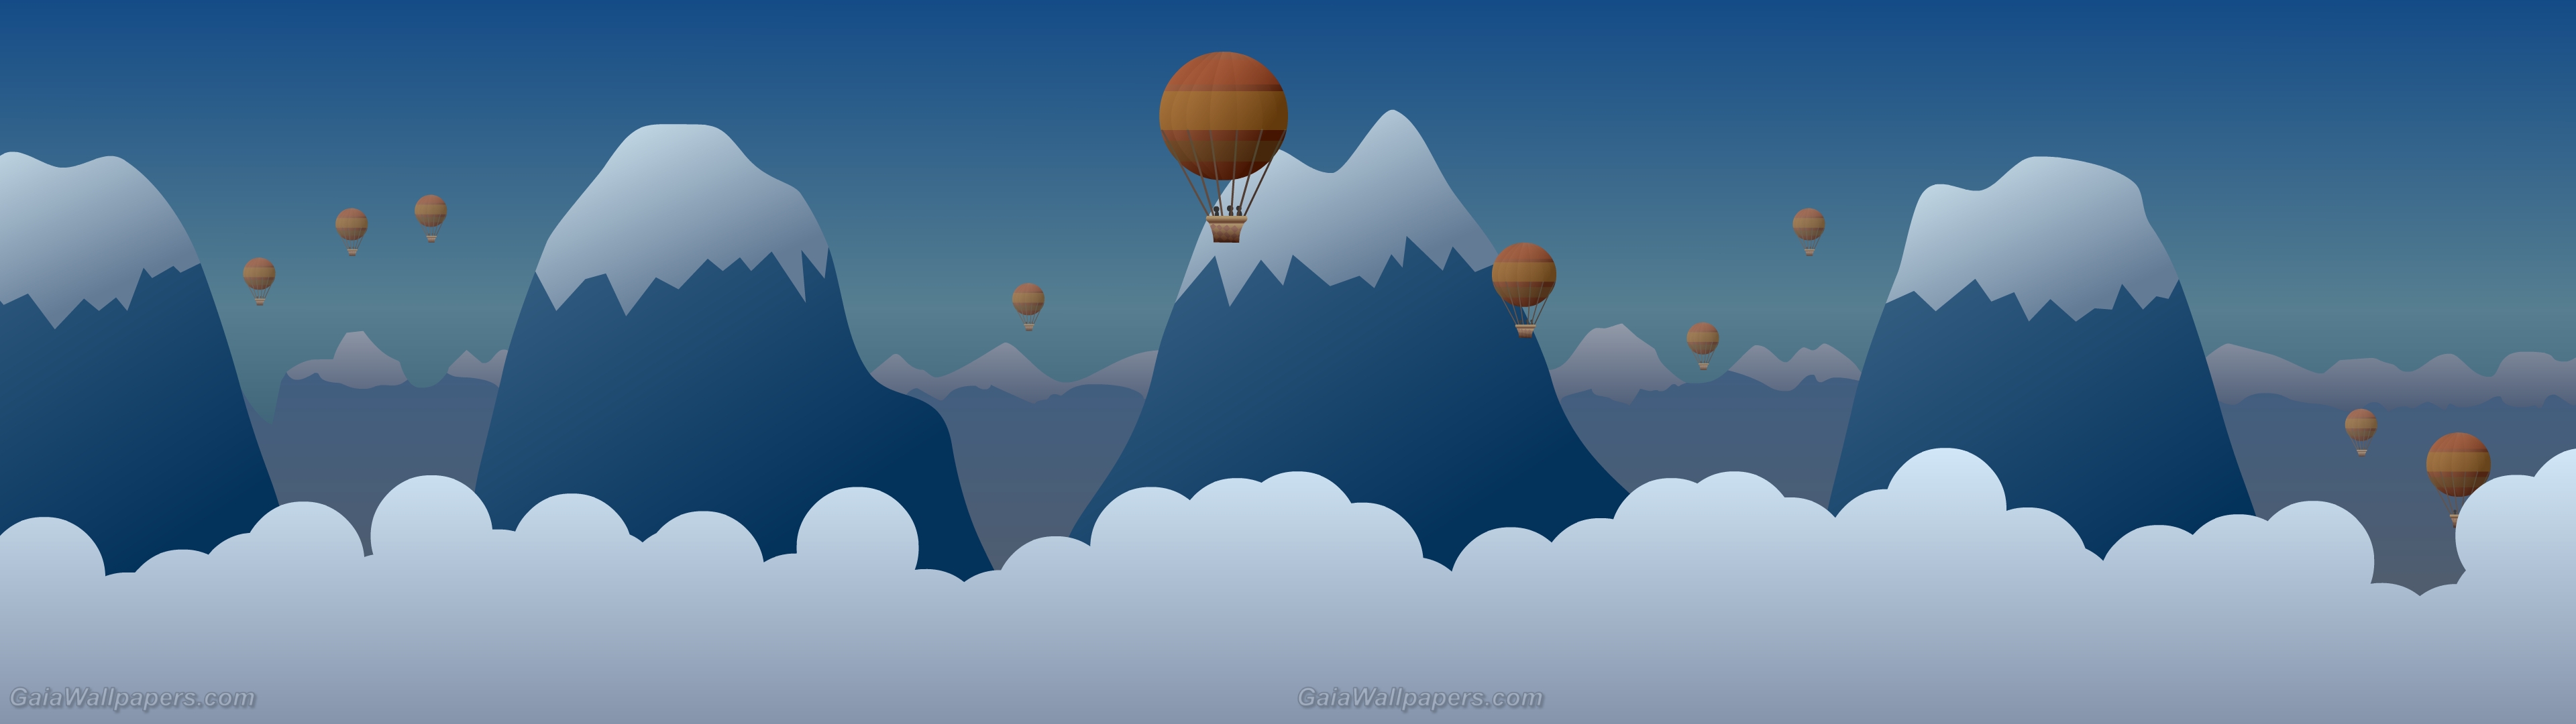 Voyage imaginaire en ballon dans les montagnes - Fonds d'écran gratuits